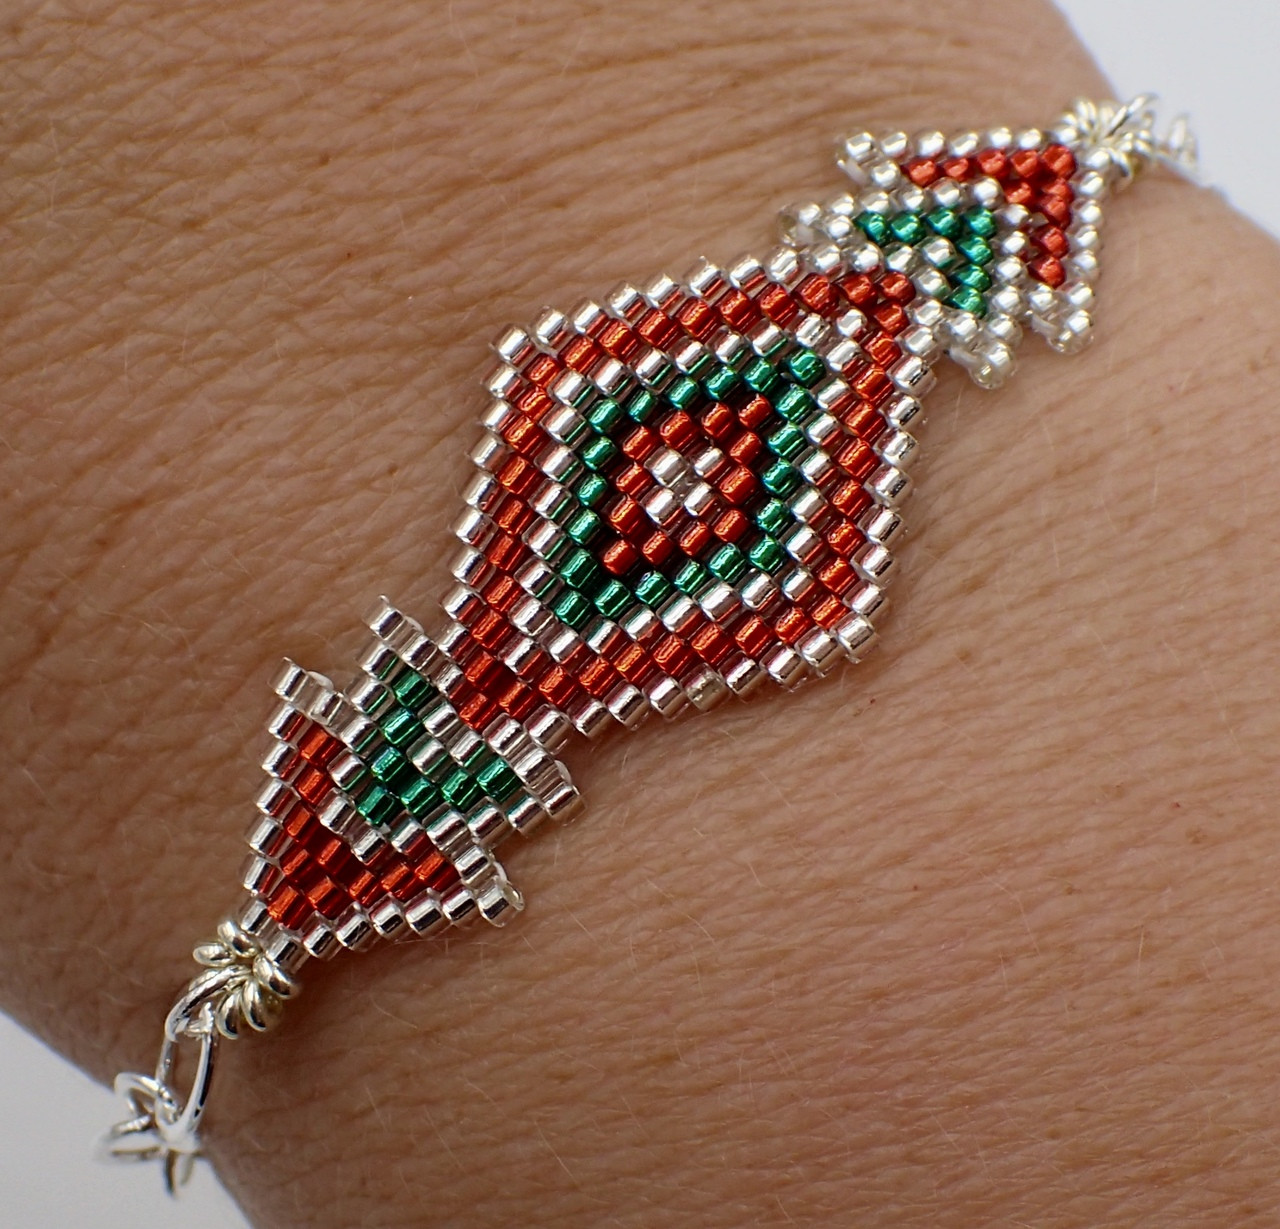 Brick Stitch Diamond Bracelet Kit - Red, Green, & Silver